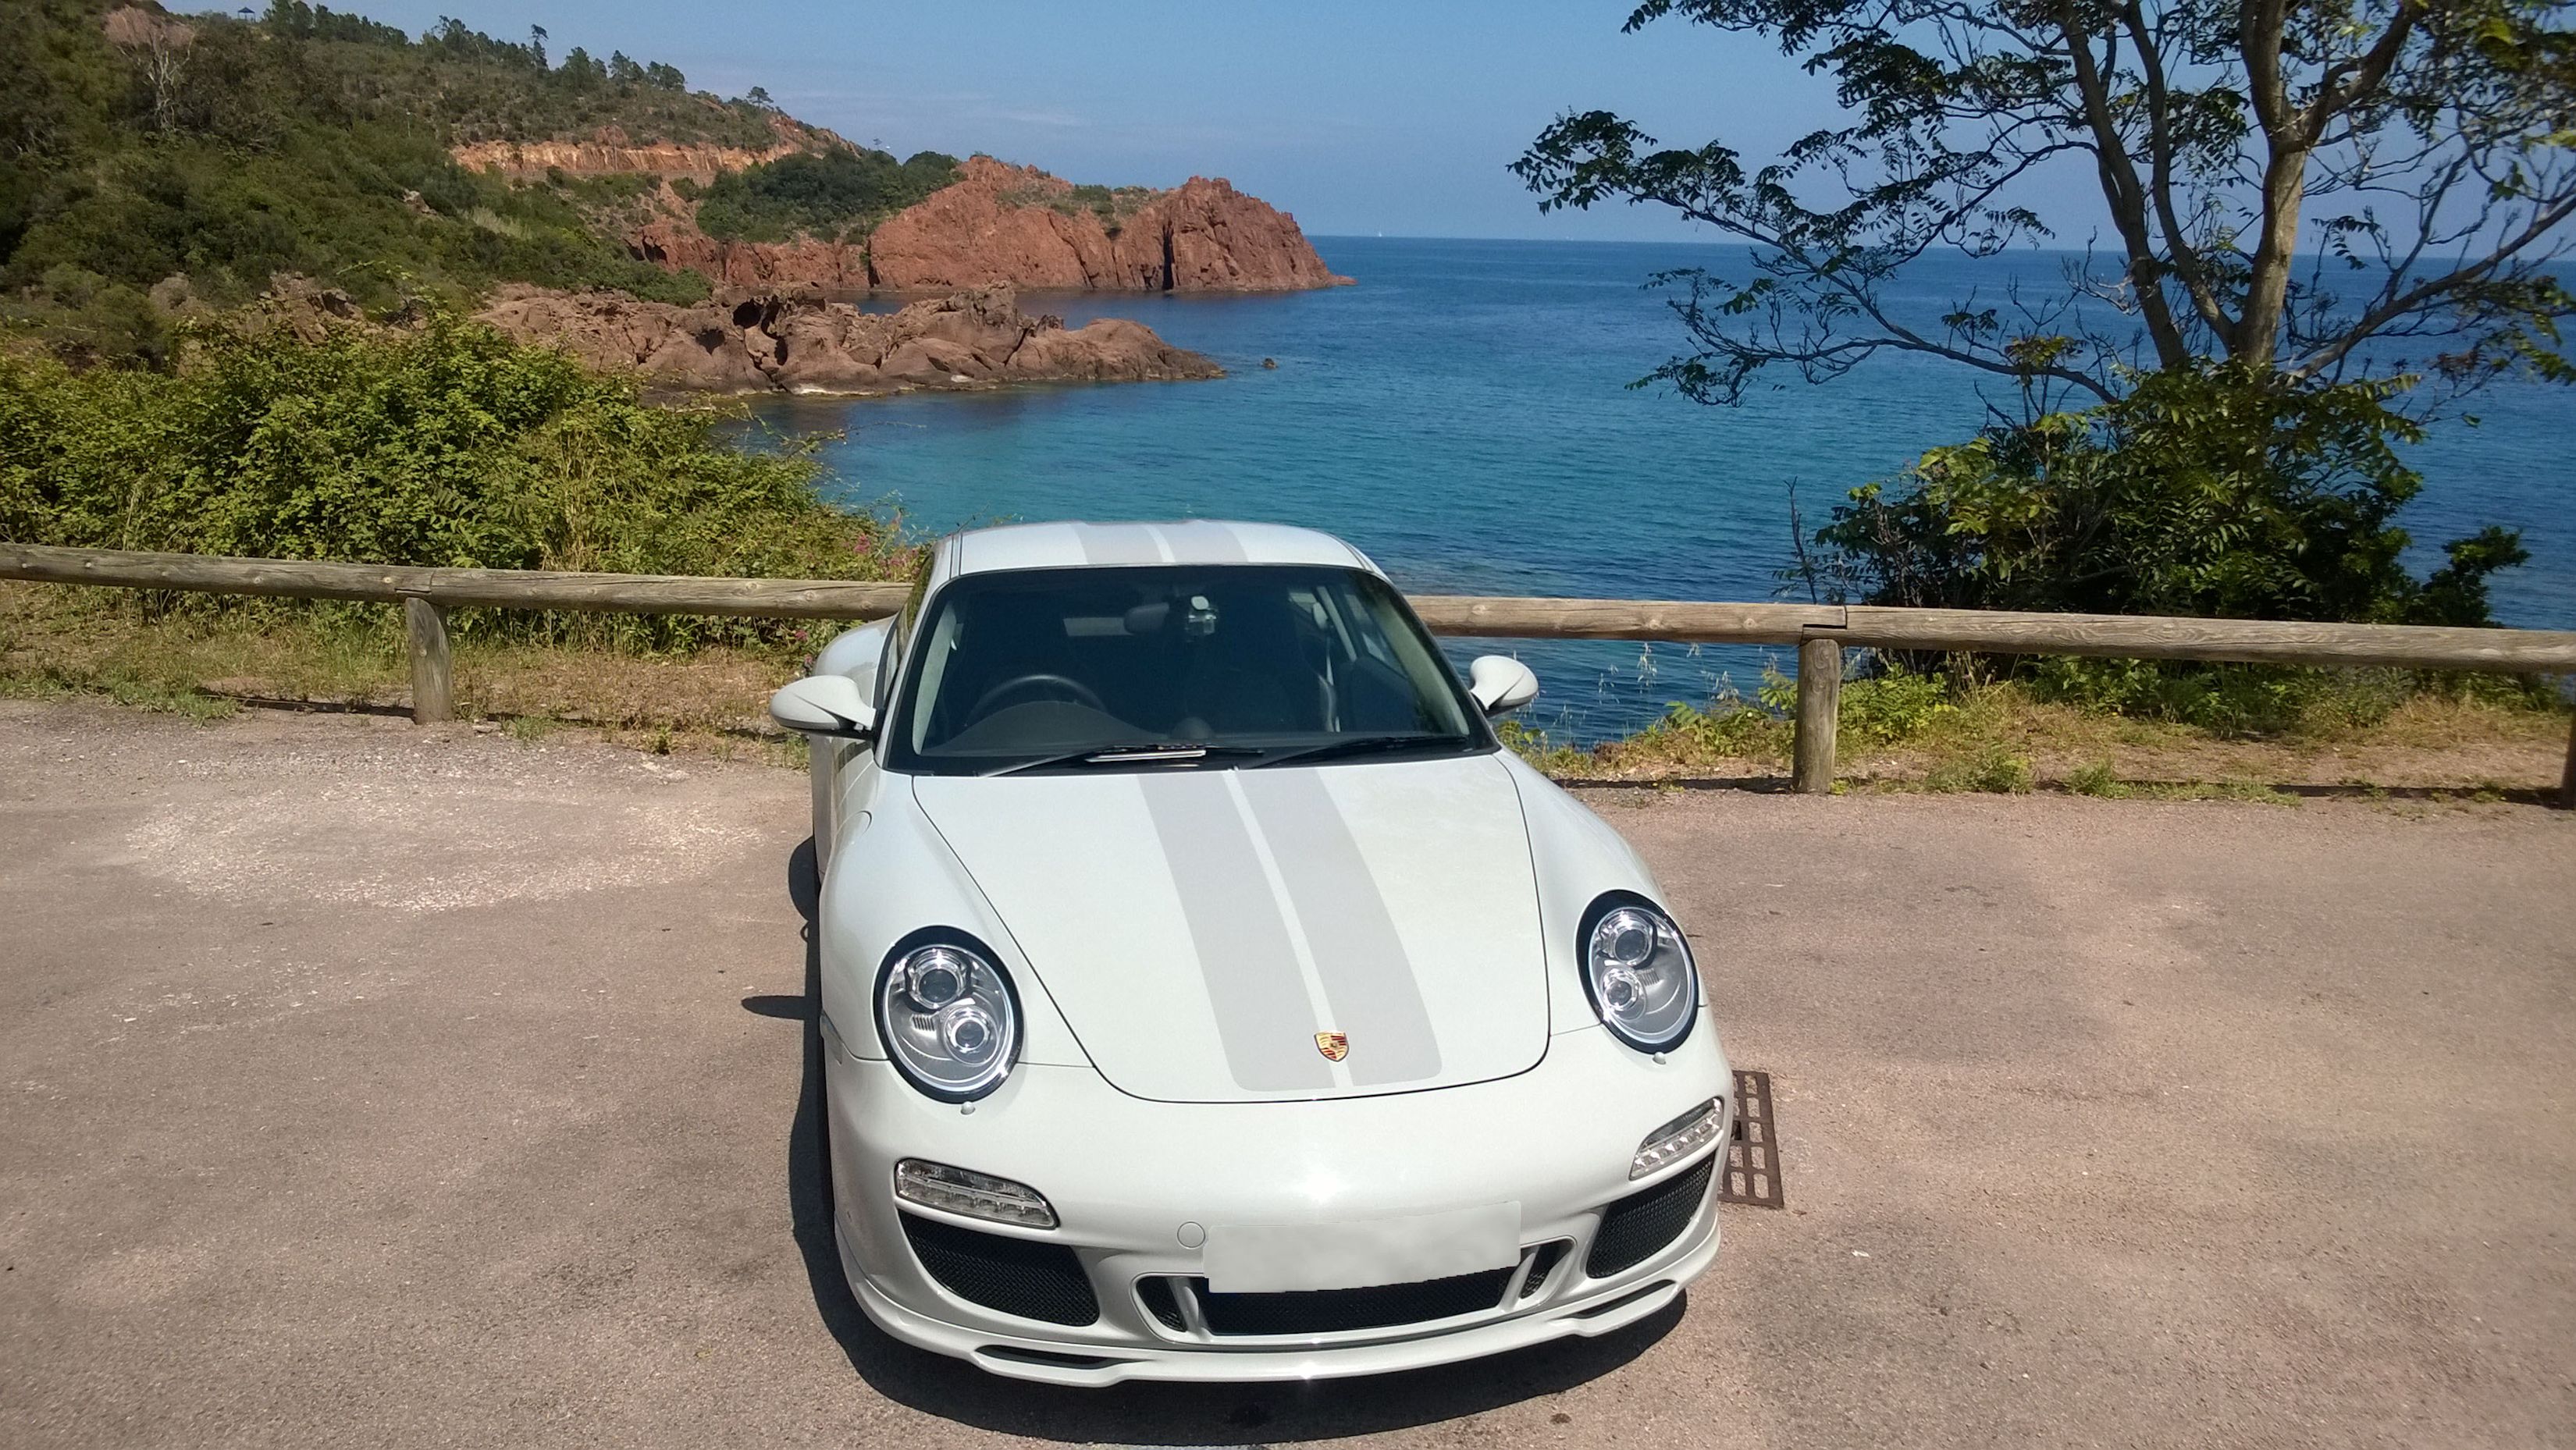 Grey 2009 Porsche 911 Sport Classic by rocky Mediterranean coastline